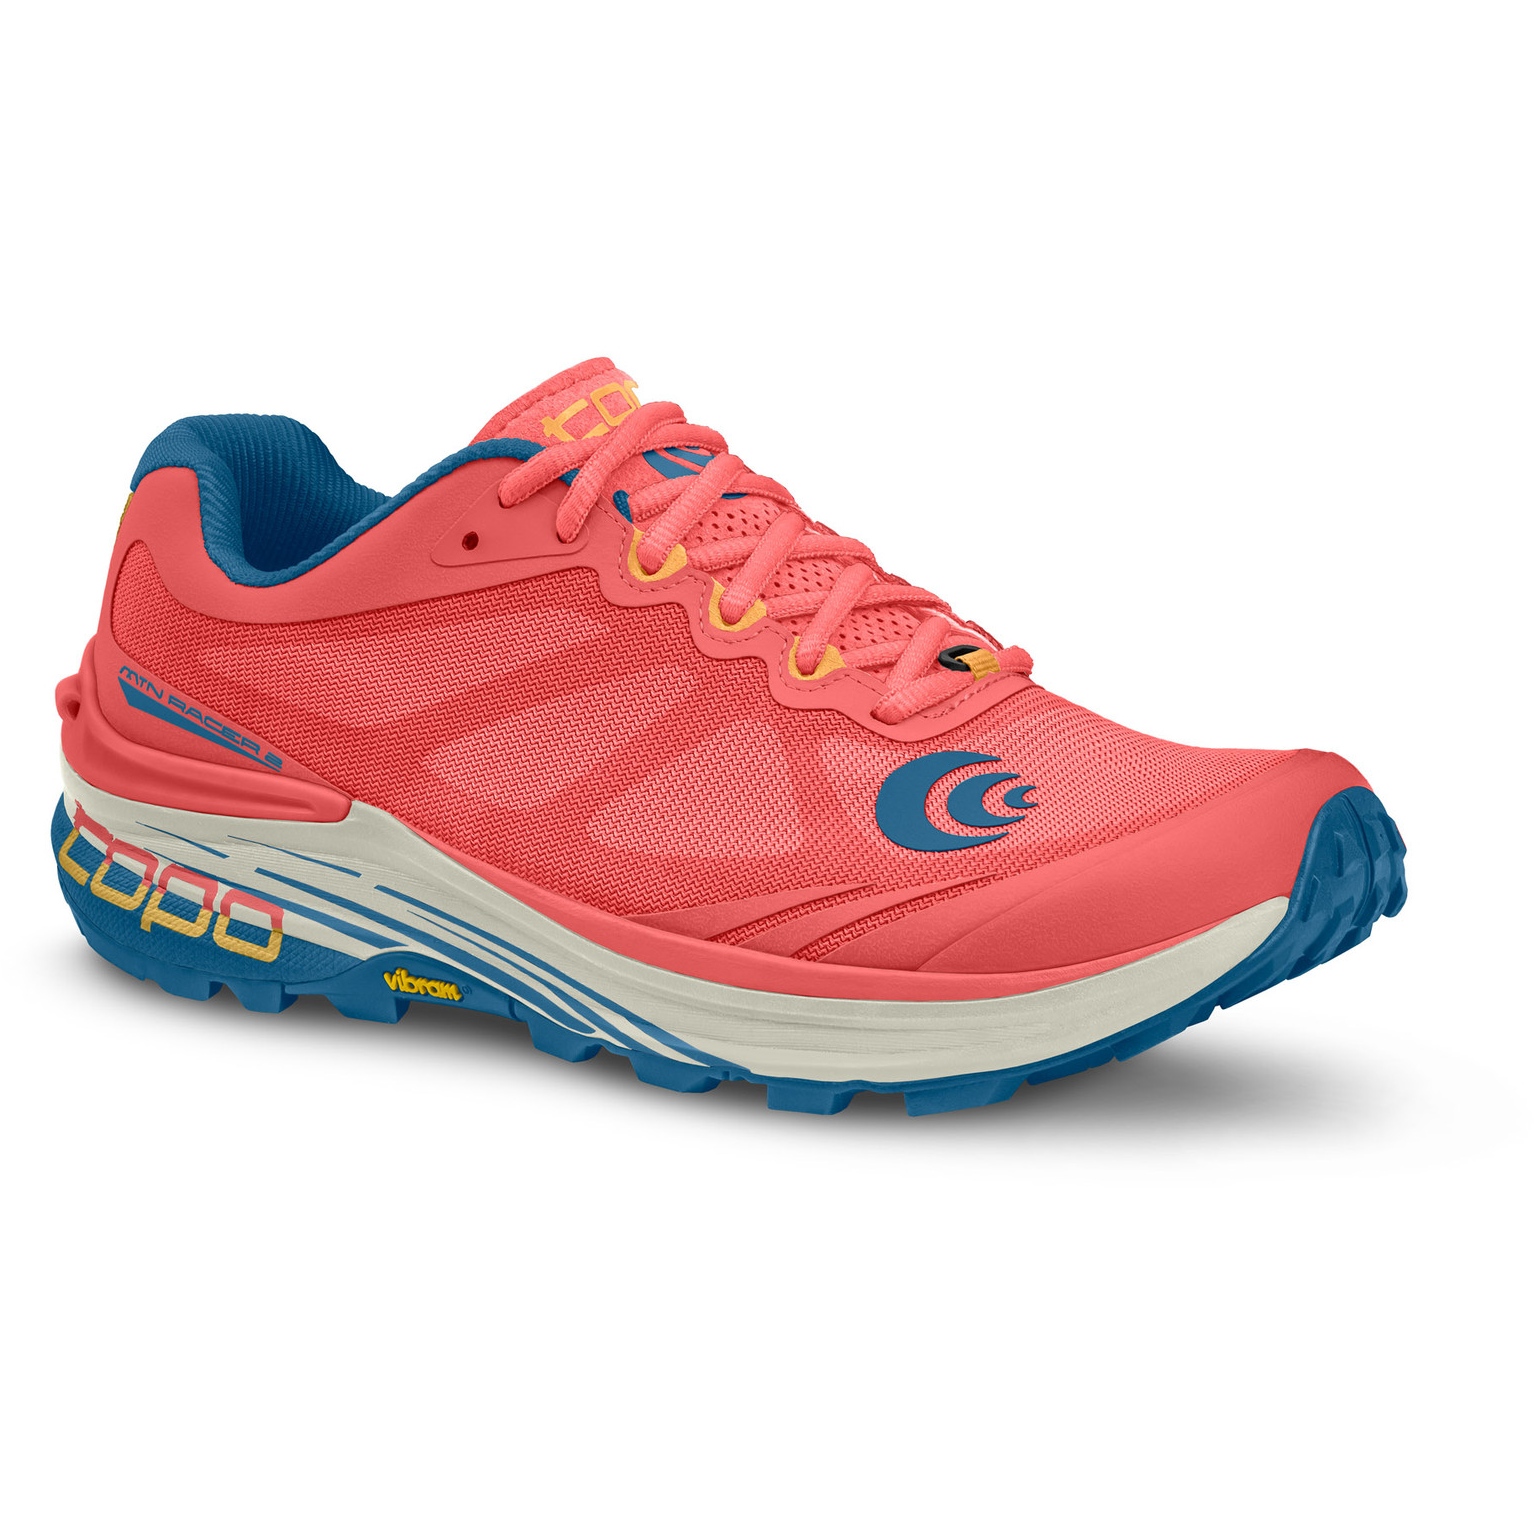 Produktbild von Topo Athletic MTN Racer 2 Trail Laufschuhe Damen - pink/blau